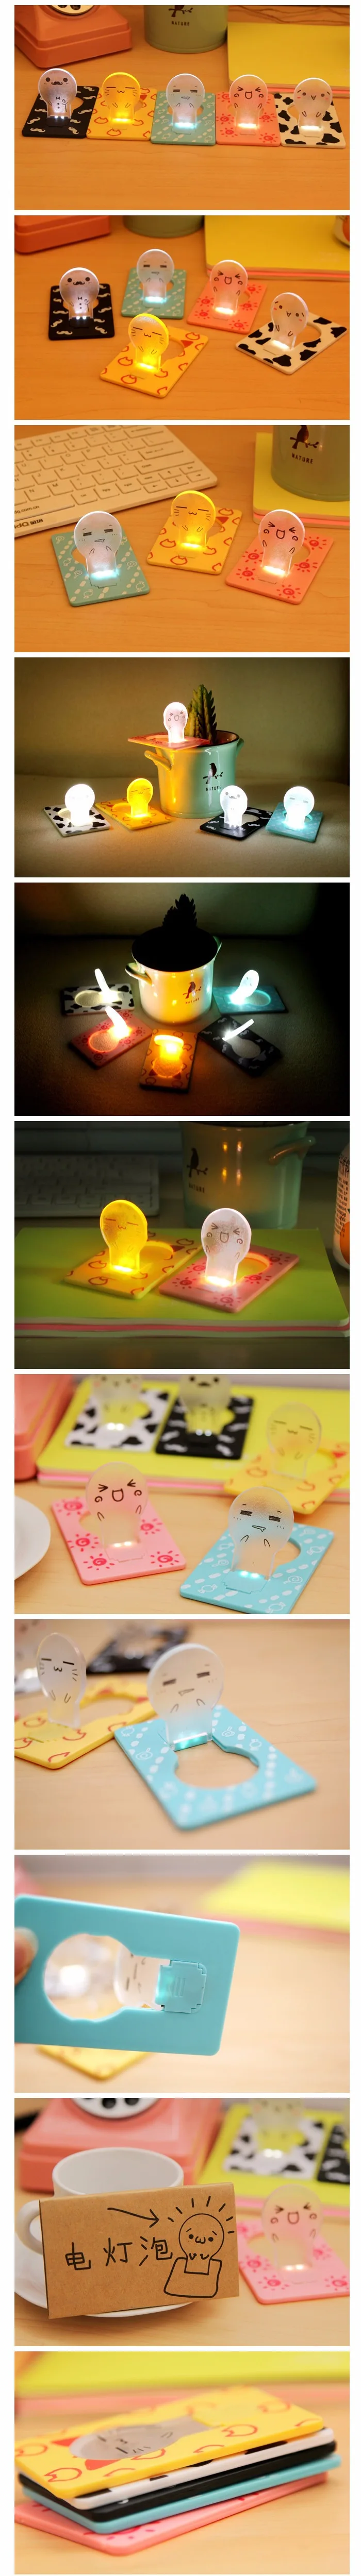 1 шт., светодиодный креативный светильник для карт, Настольный светильник, аксессуары для рабочего стола, мультяшный светильник s, креативный настольный набор, детский подарок